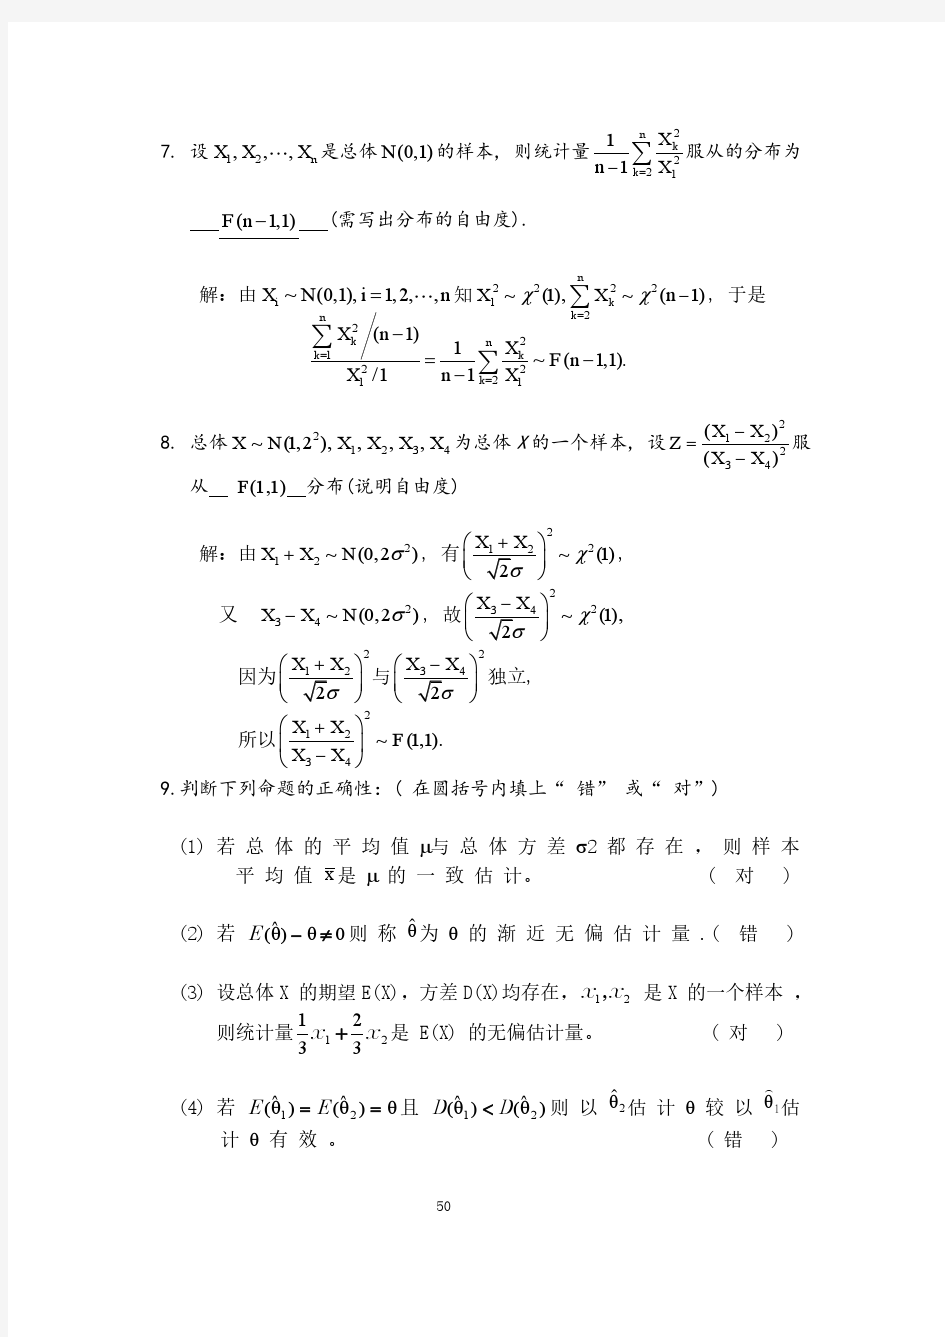 天津理工大学概率论与数理统计第六章习题答案详解